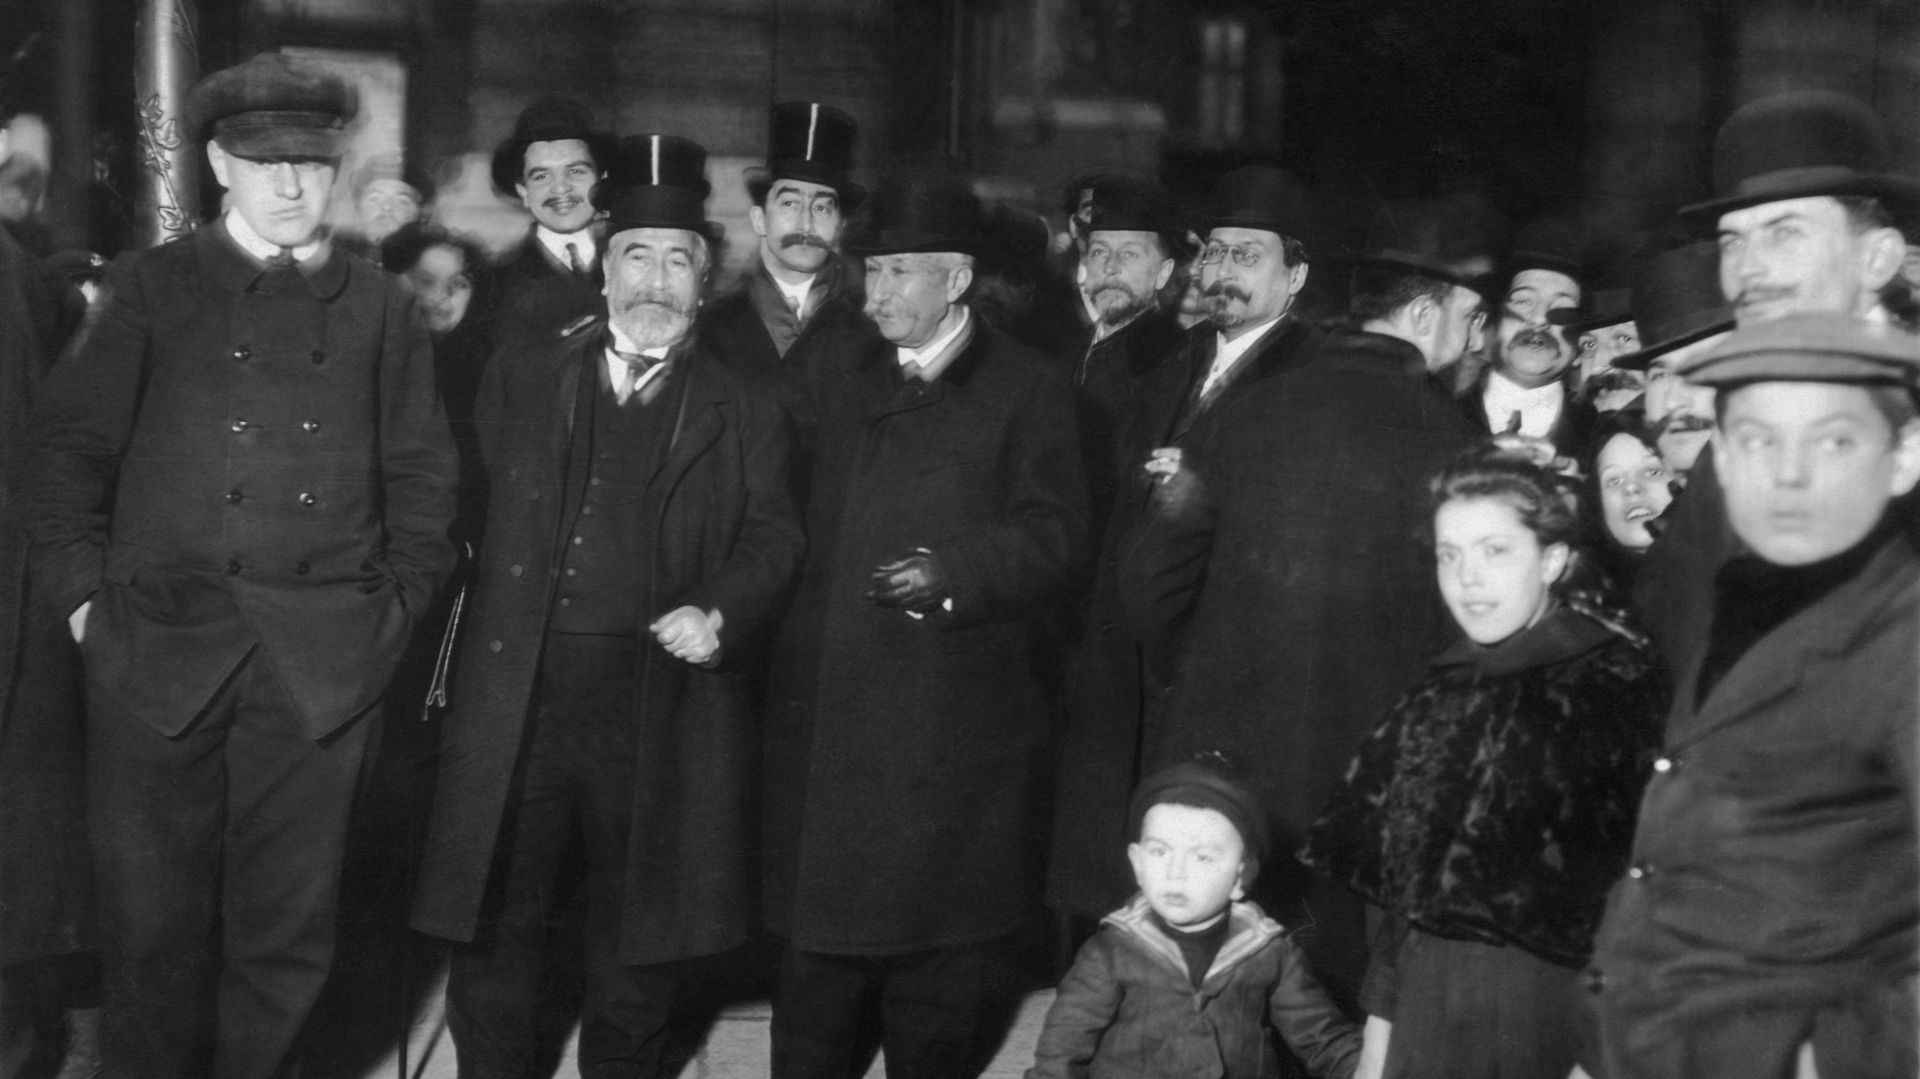 Le pionnier Ader et ses amis durant un événement organisé par les frères Wright, en 1905